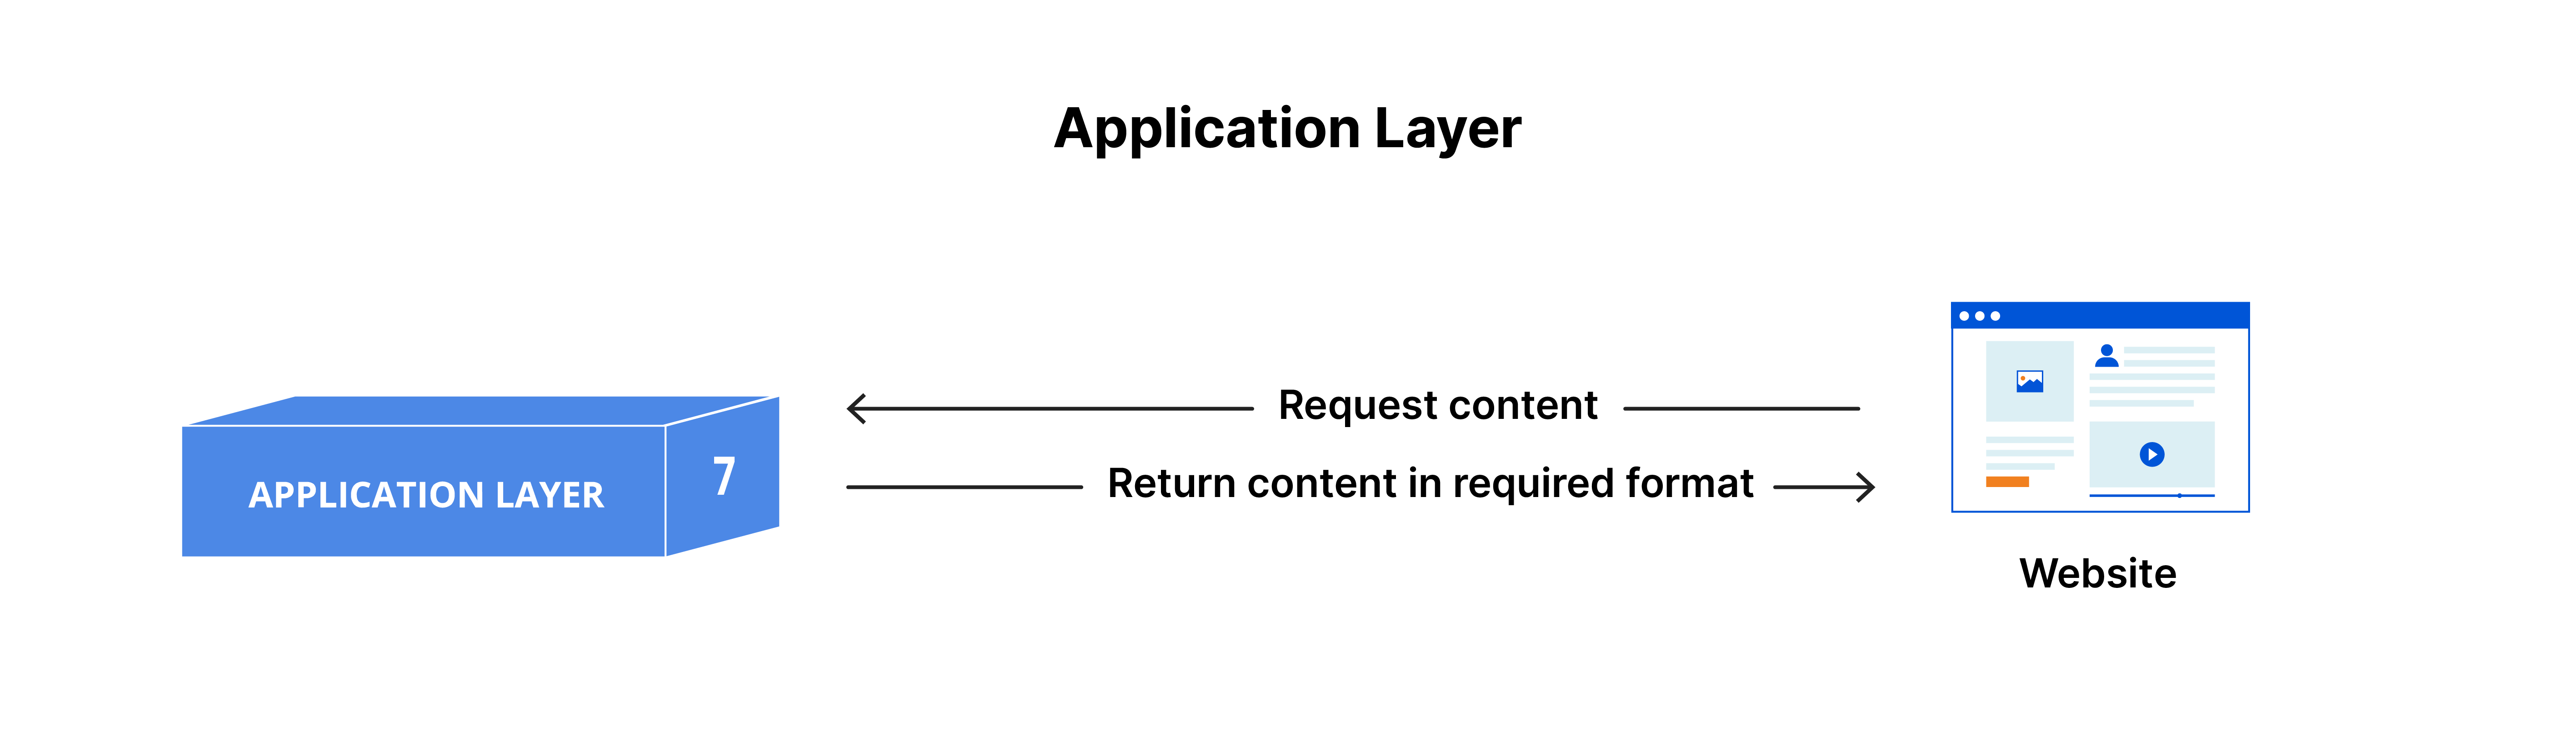 La couche d'application : contenu demandé et renvoyé dans le format requis